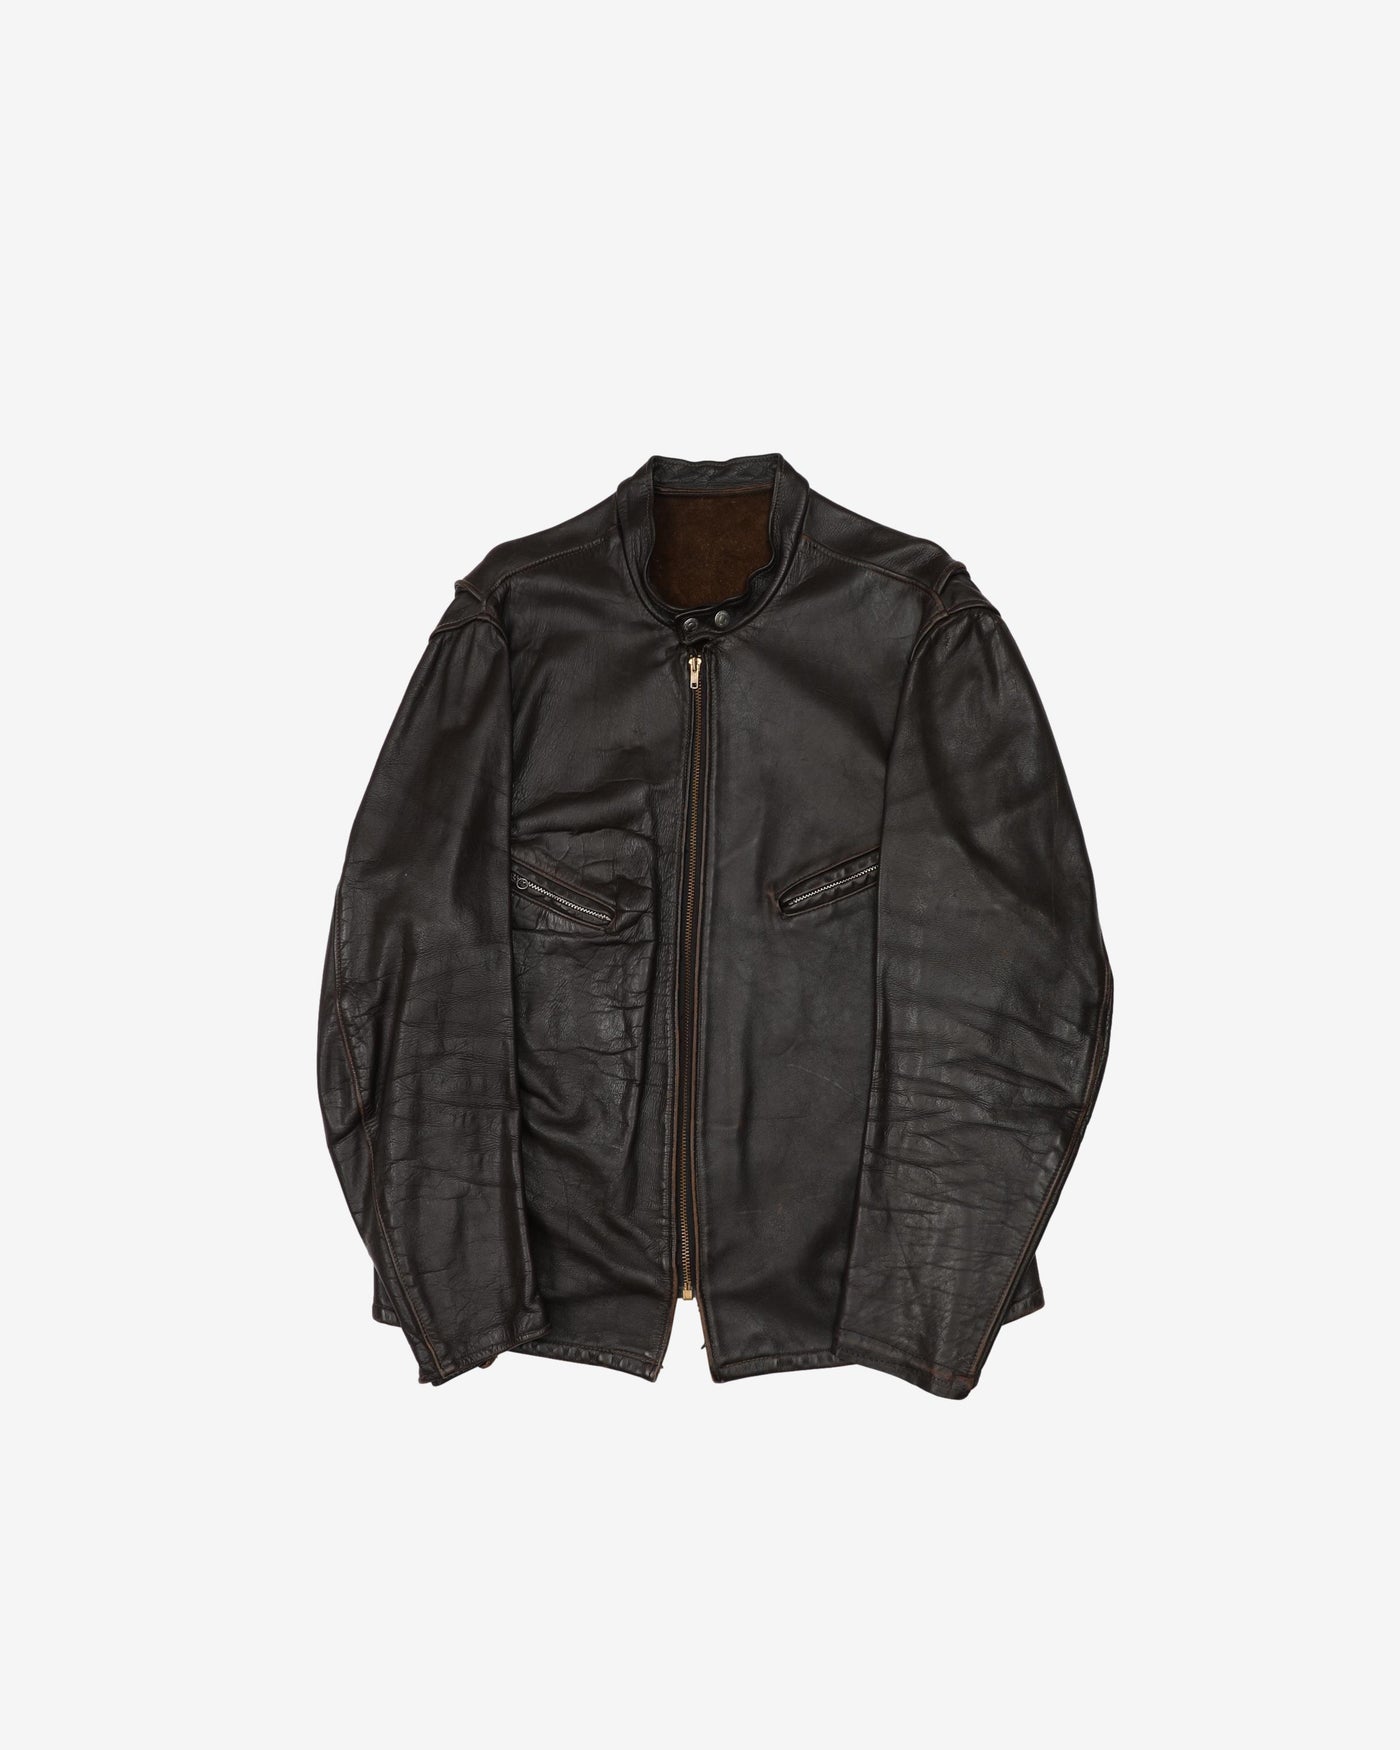 Vintage 50s/60s Dark Brown Leather Jacket - L